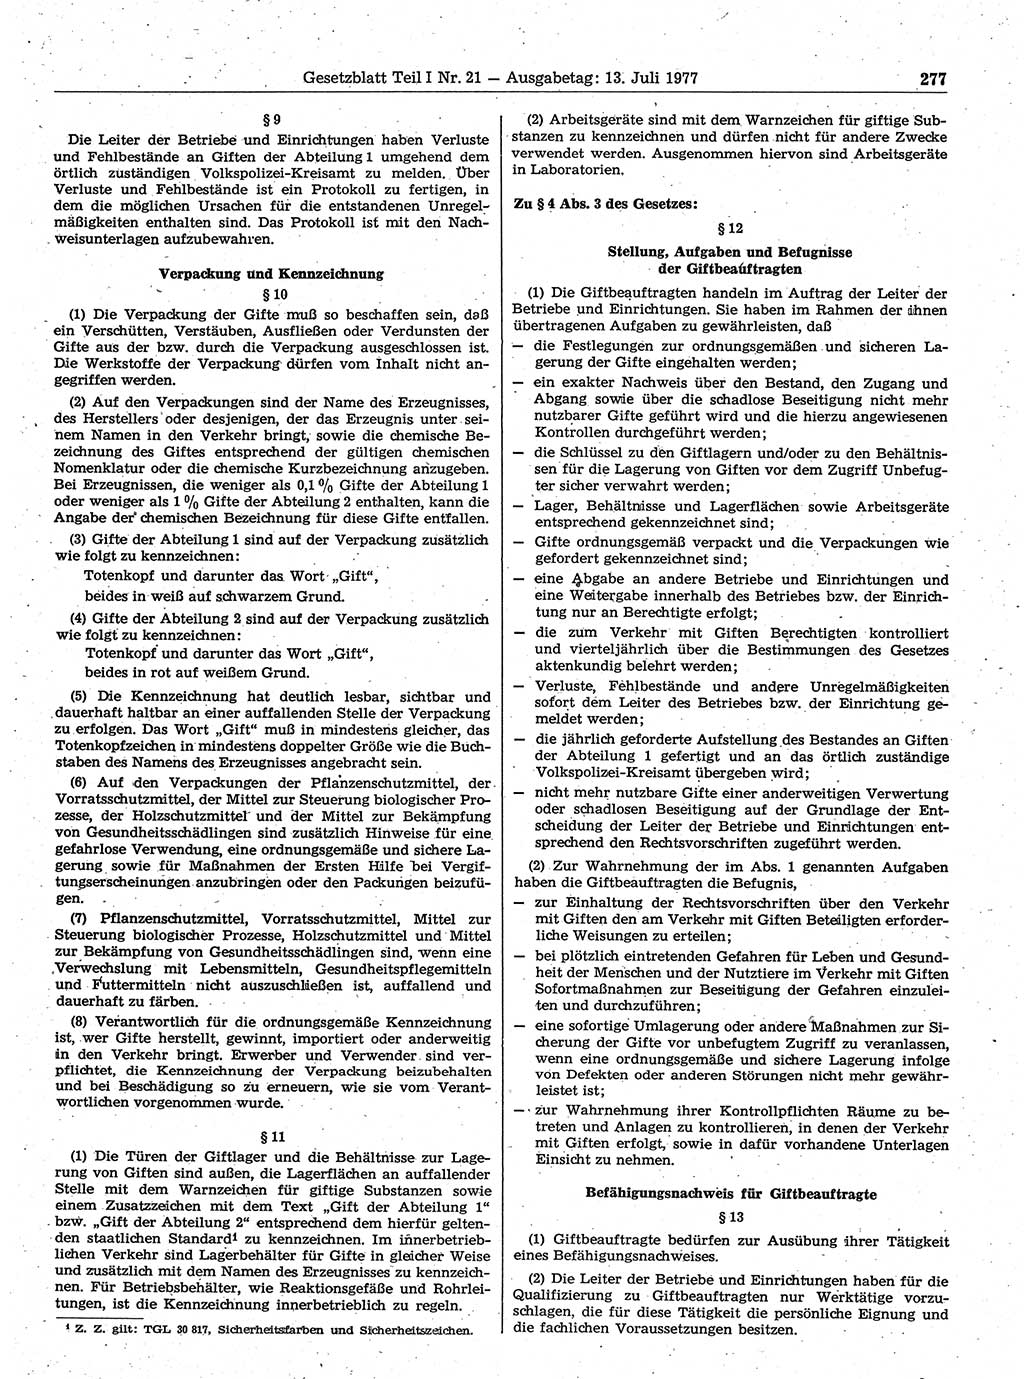 Gesetzblatt (GBl.) der Deutschen Demokratischen Republik (DDR) Teil Ⅰ 1977, Seite 277 (GBl. DDR Ⅰ 1977, S. 277)